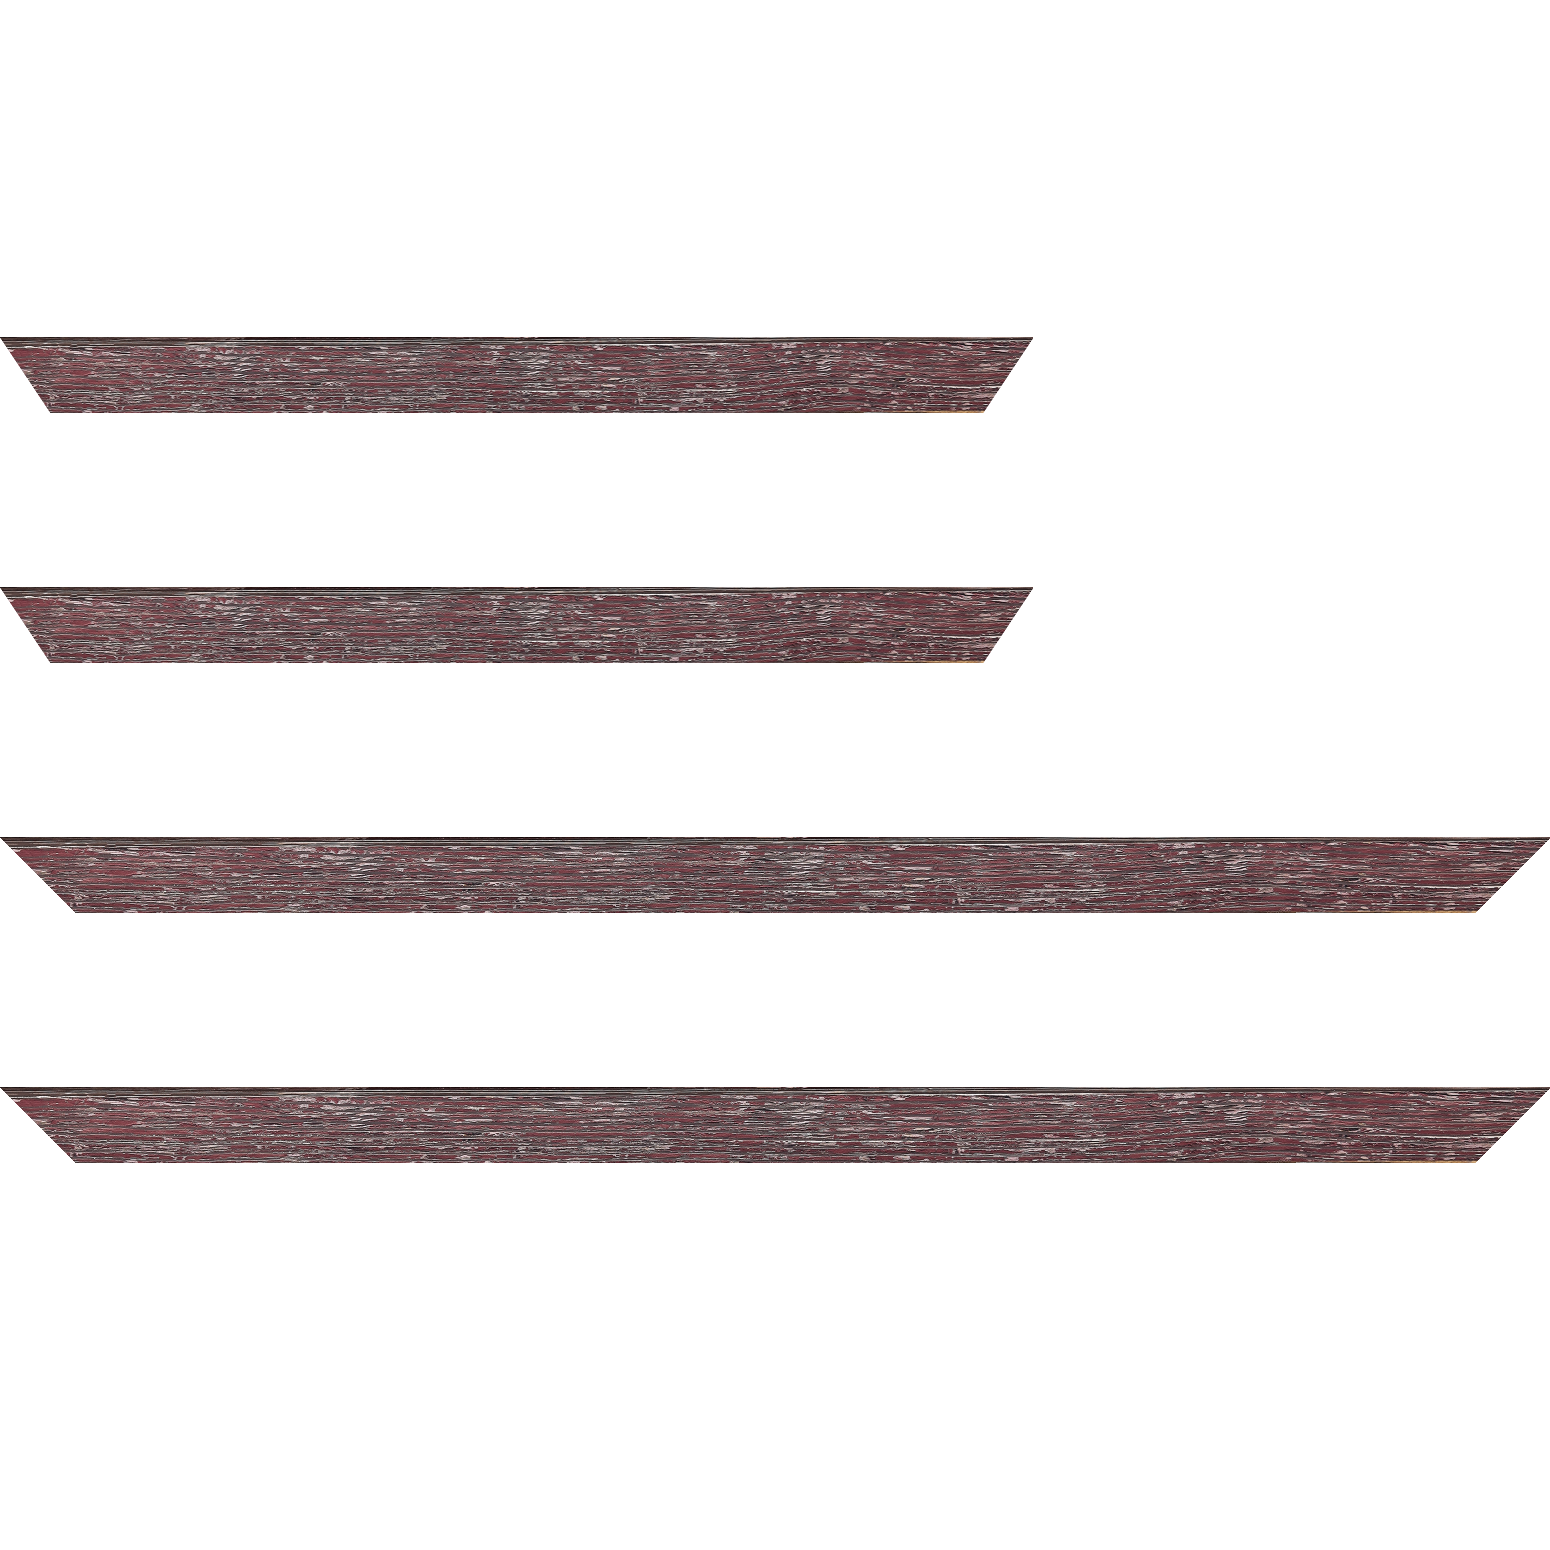 Baguette bois profil arrondi en pente plongeant largeur 2.4cm couleur framboise finition veinée, reflet argenté - 59.4x84.1